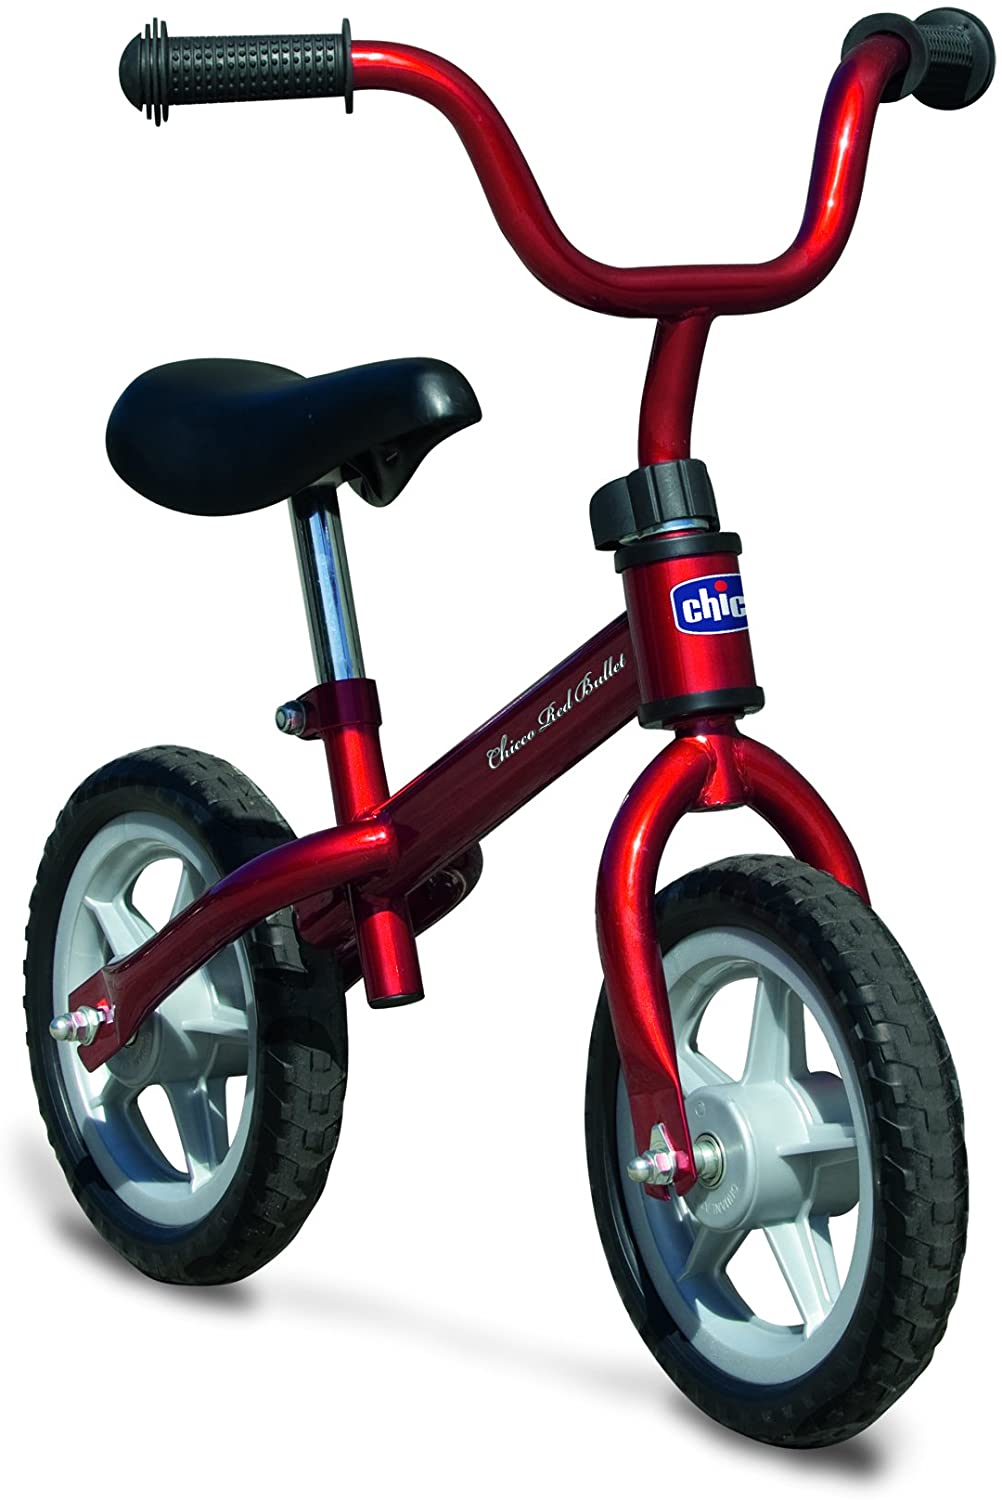 Chicco - Prima Bicicletta, Rosso, 2-5 anni, portata massima 25 kg, 17161